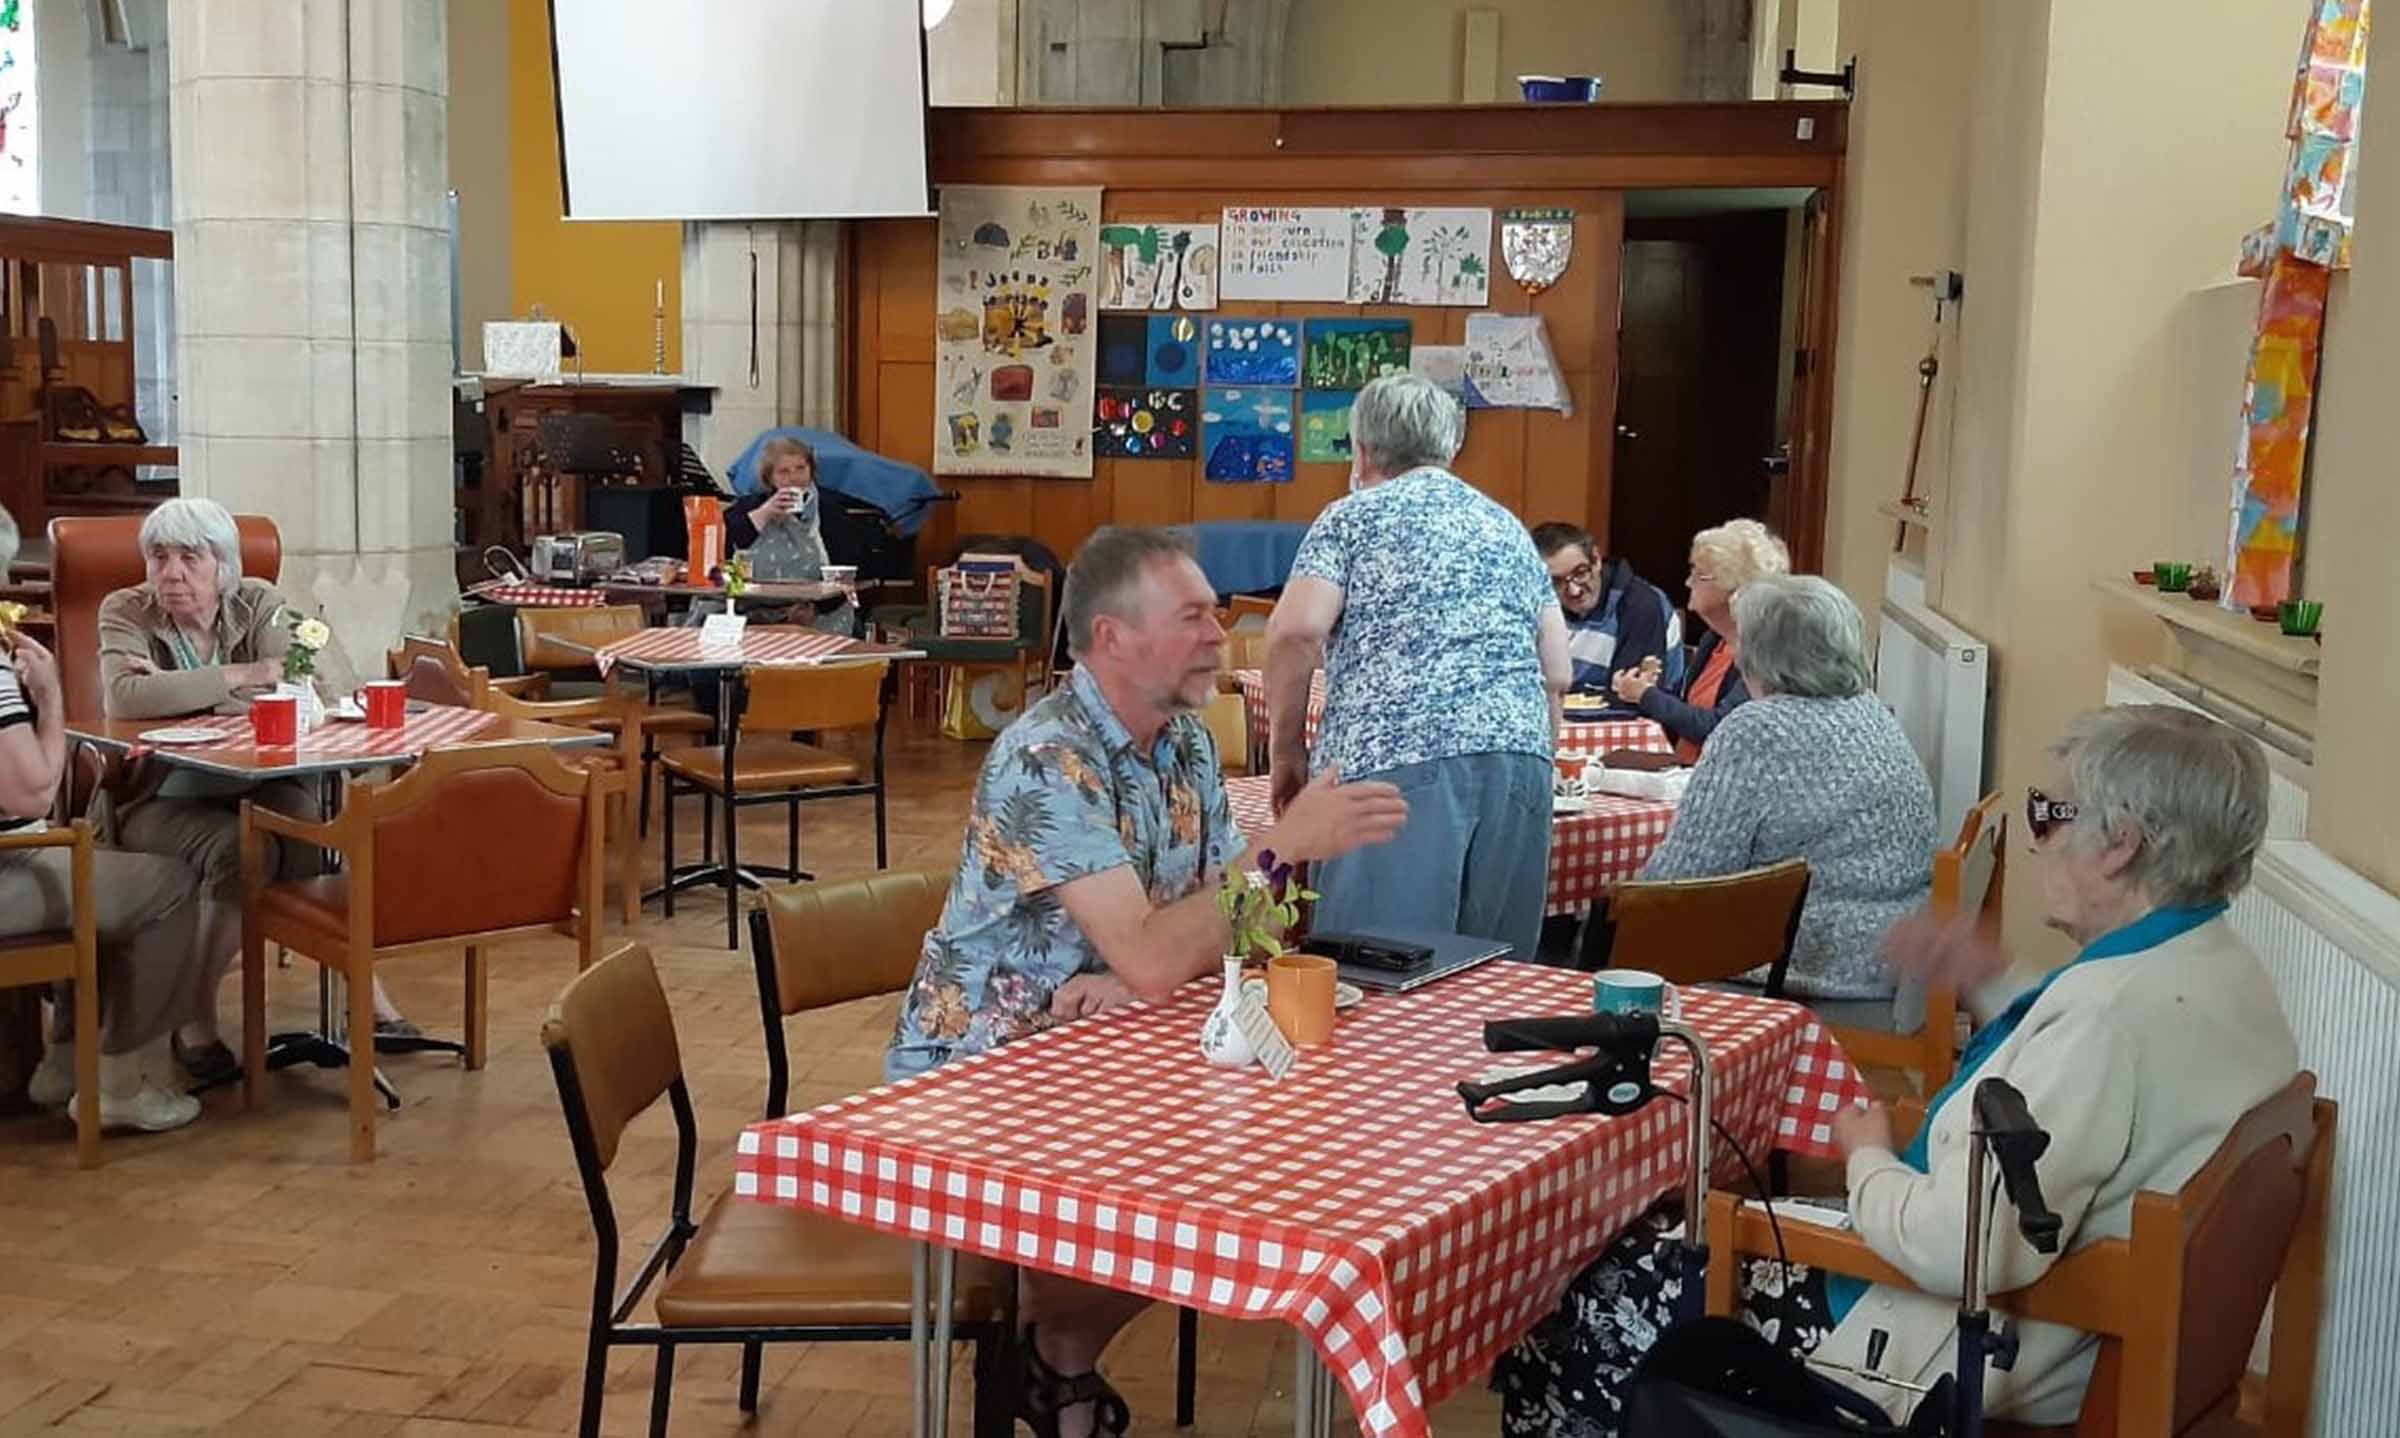 St Aidan's Church Community Café